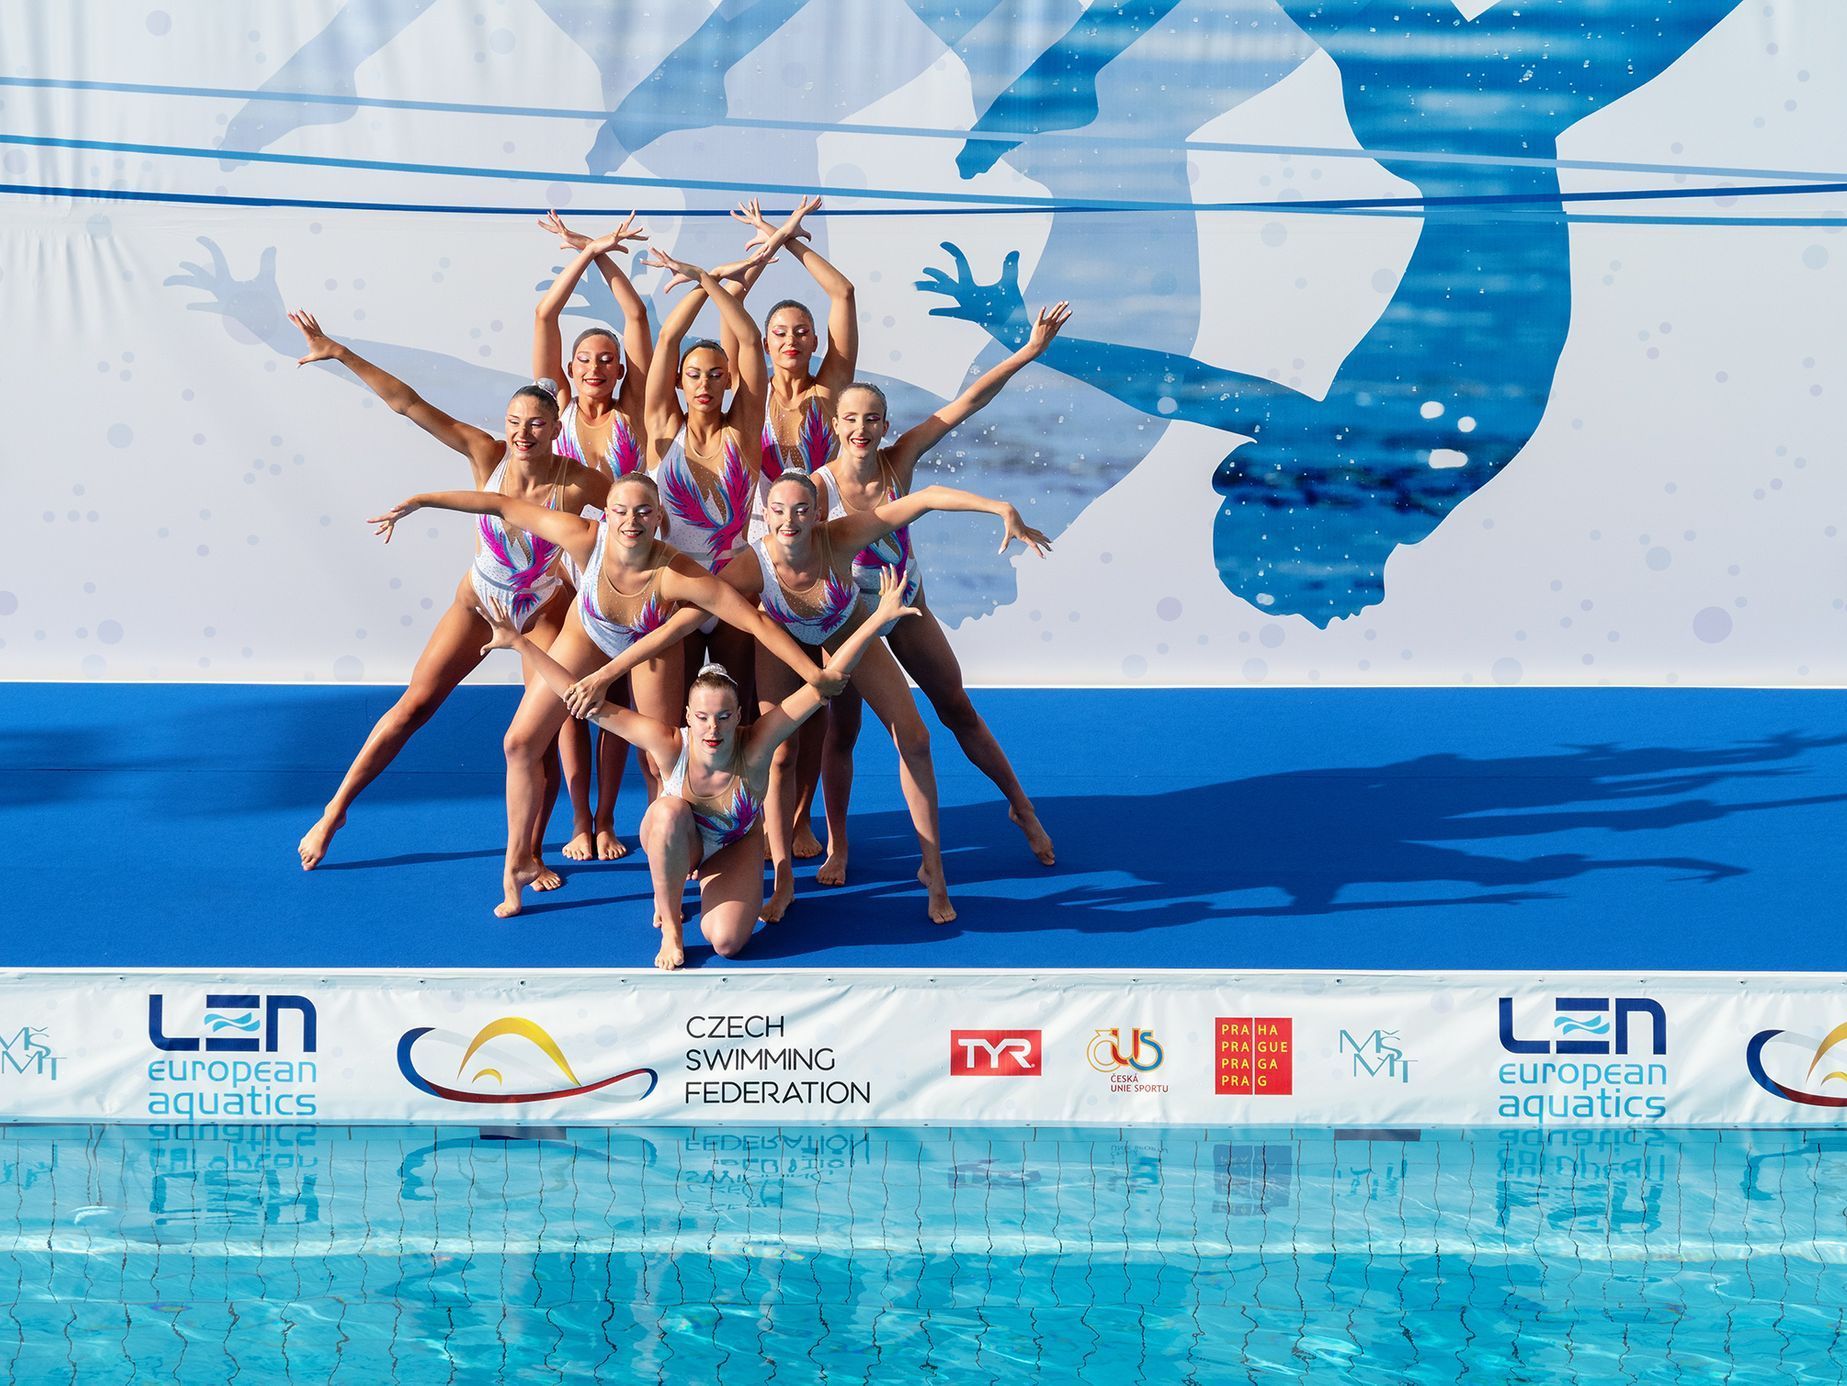 ME juniorů v synchronizovaném plavání, Praha 2019 (akvabely)